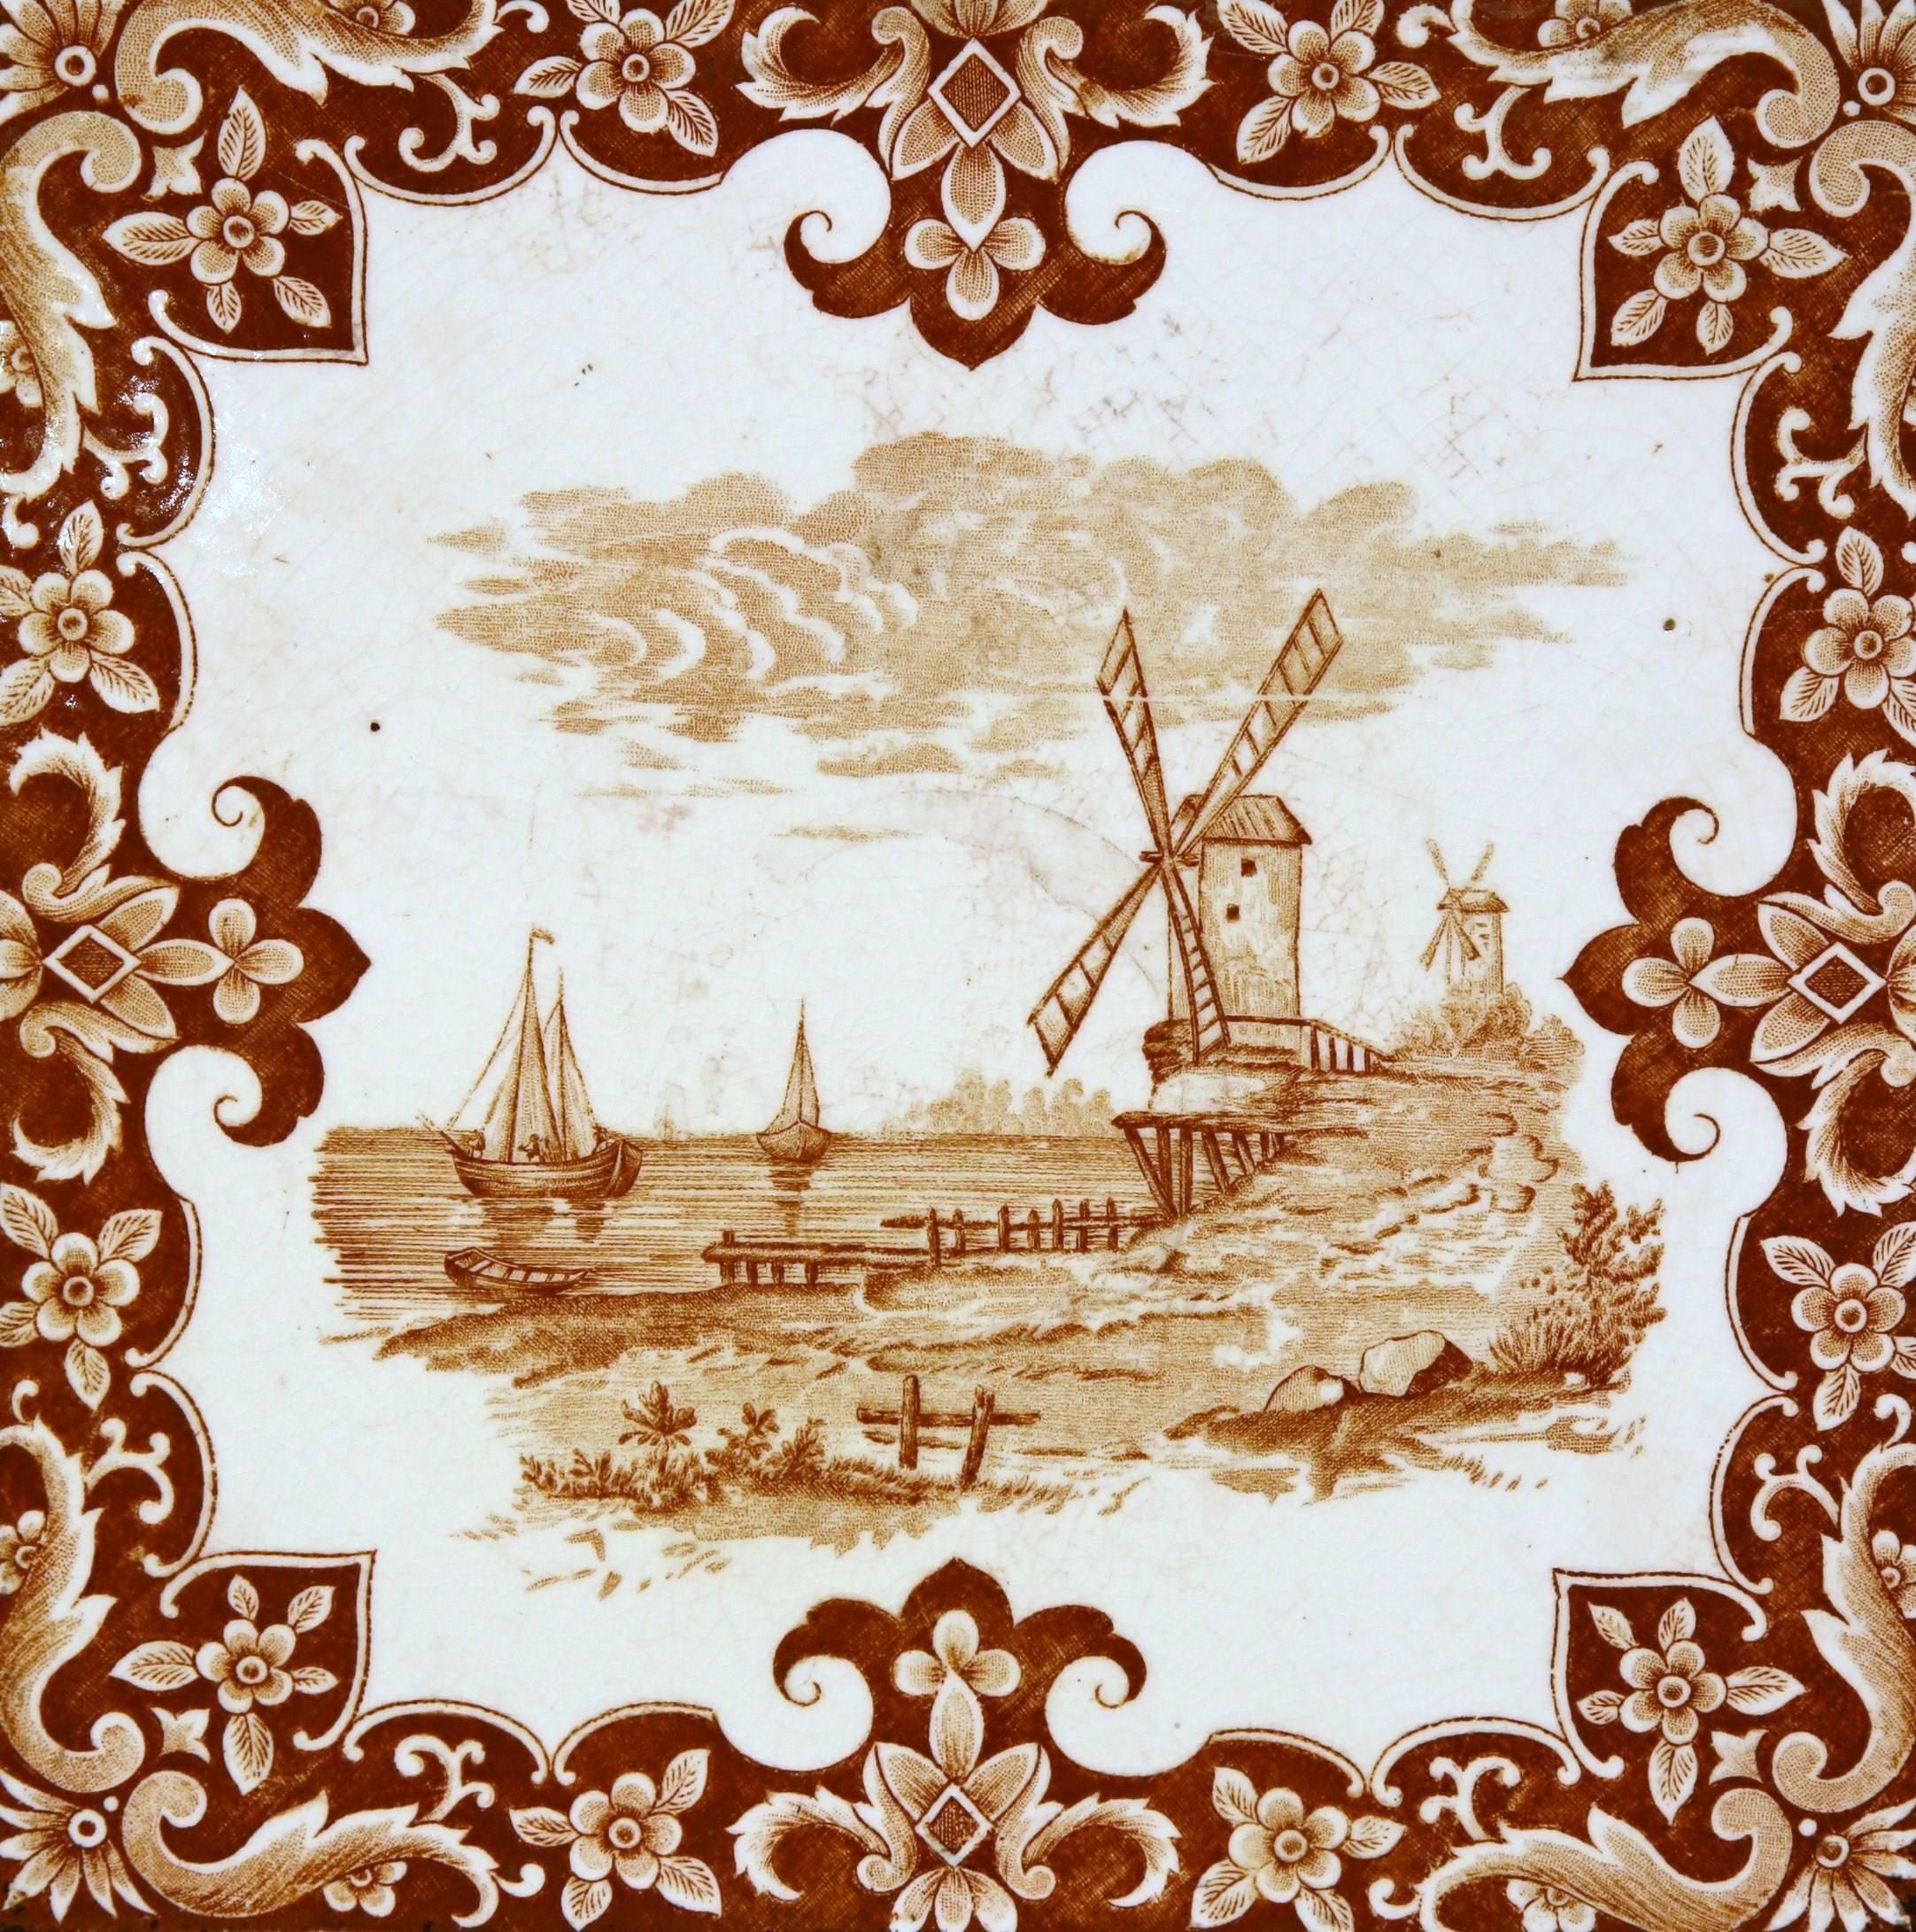 Cet intéressant et ancien plateau pour plats chauds a été fabriqué en France, vers 1870. La pièce présente un carreau central peint à la main avec un moulin à vent et des voiliers dans une palette de brun et de blanc. Le carreau de céramique est